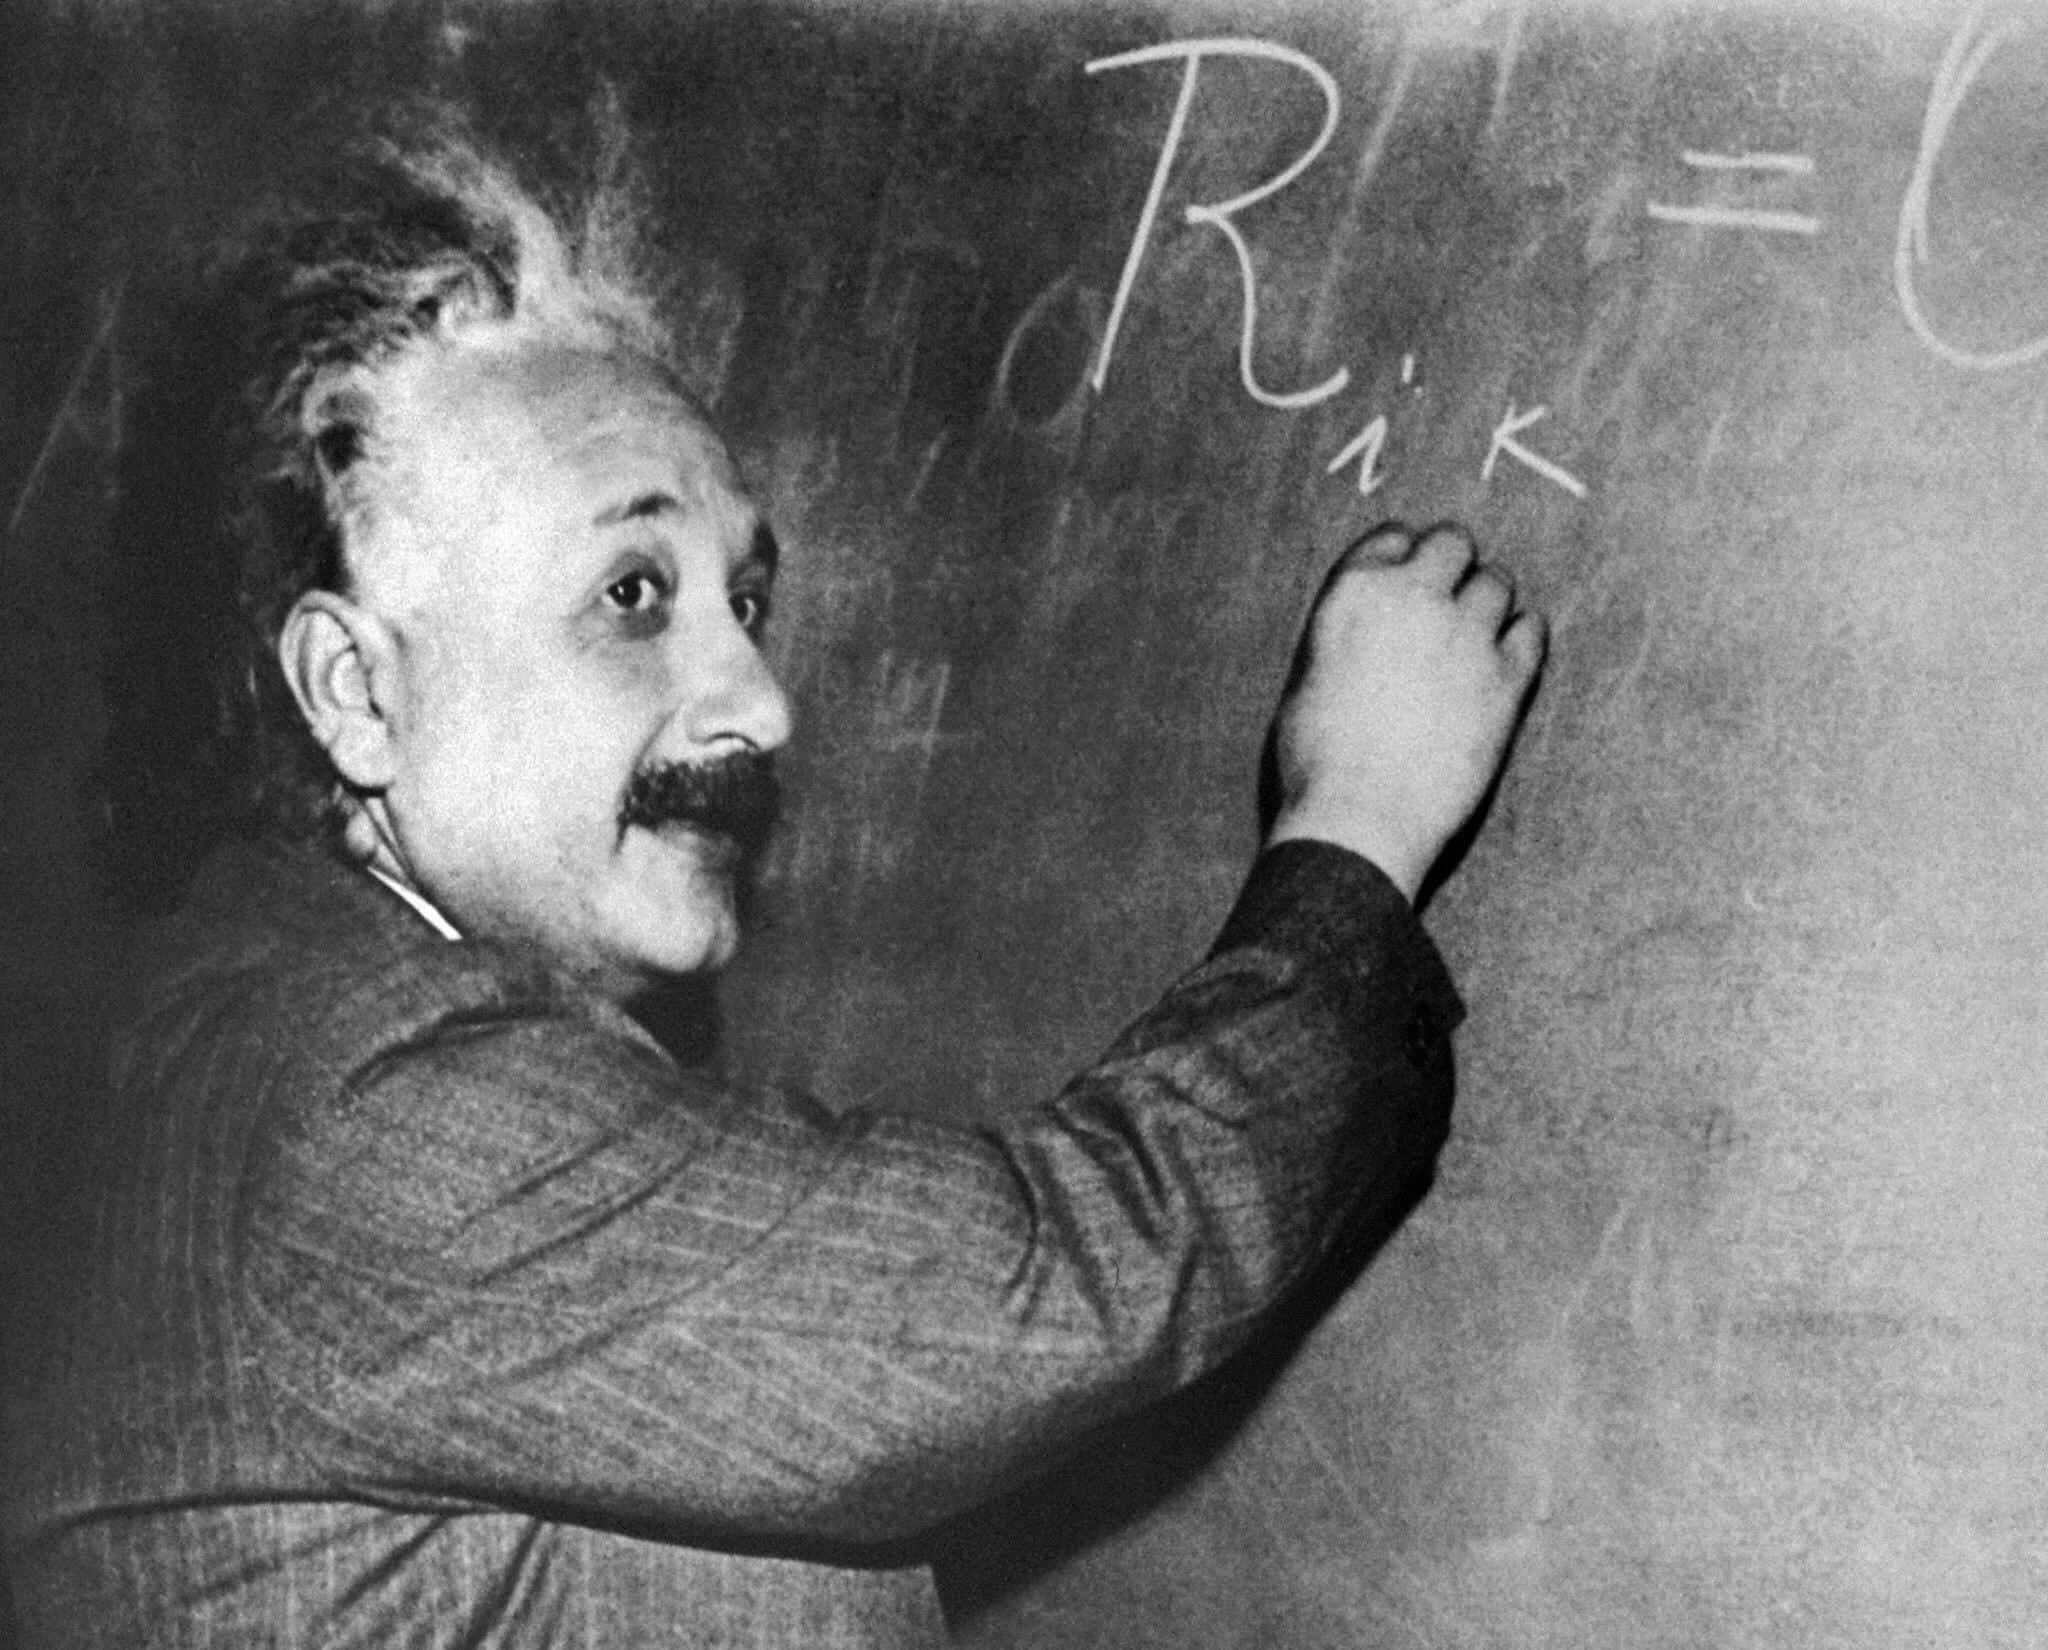 Albert Einstein at a chalk board.